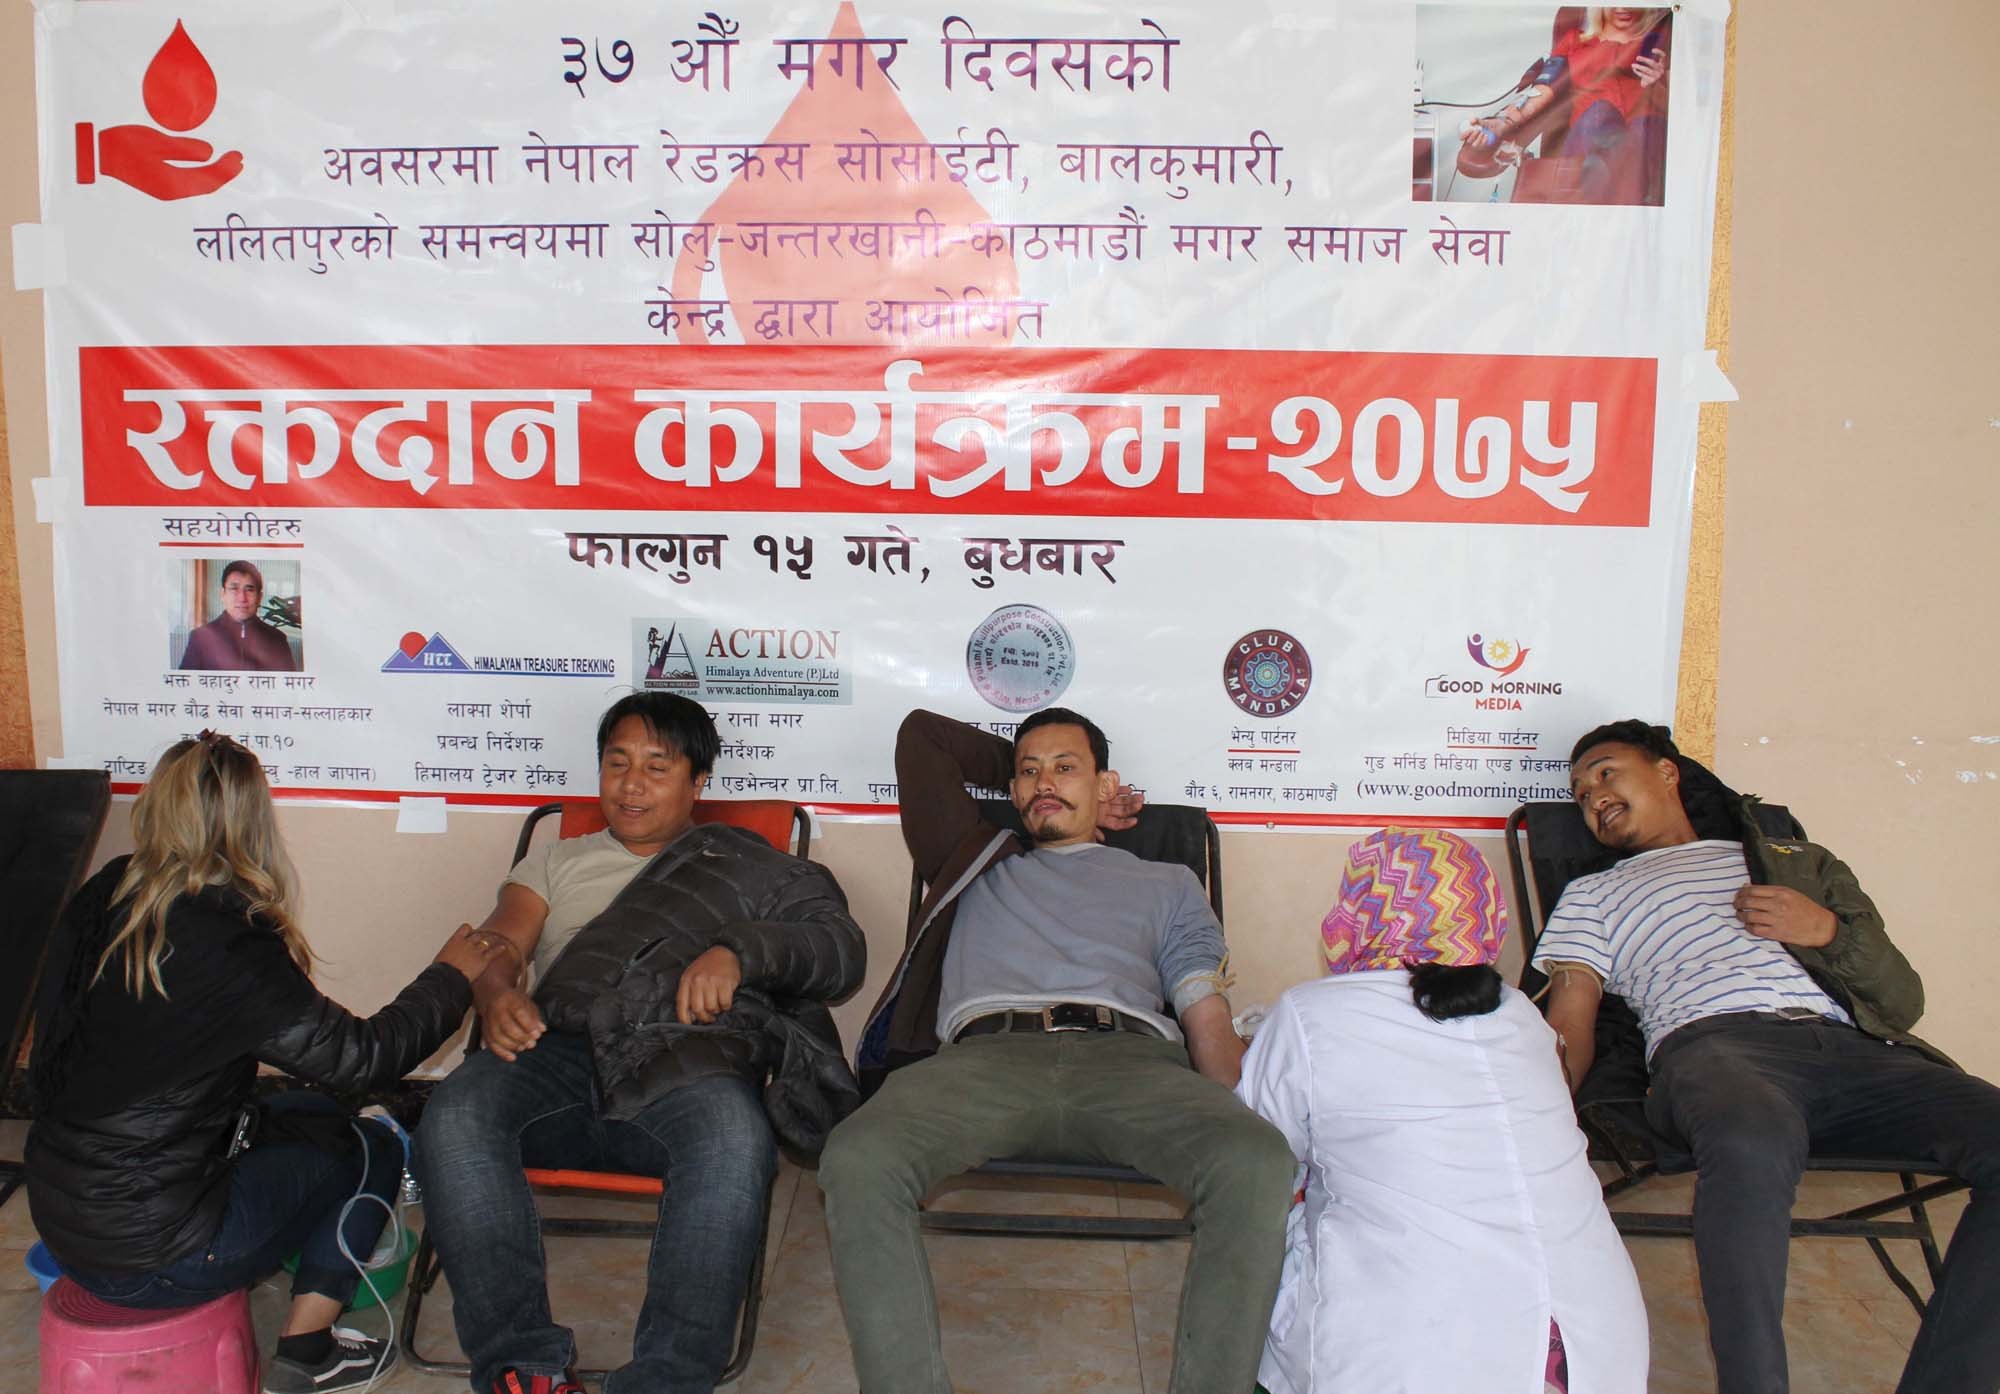 ३७ औँ मगर दिवसको अवसरमा सोलु जन्तरखानी काठमाण्डौँ मगर समाज सेवा केन्द्रले गर्यो रक्तदान कार्यक्रम